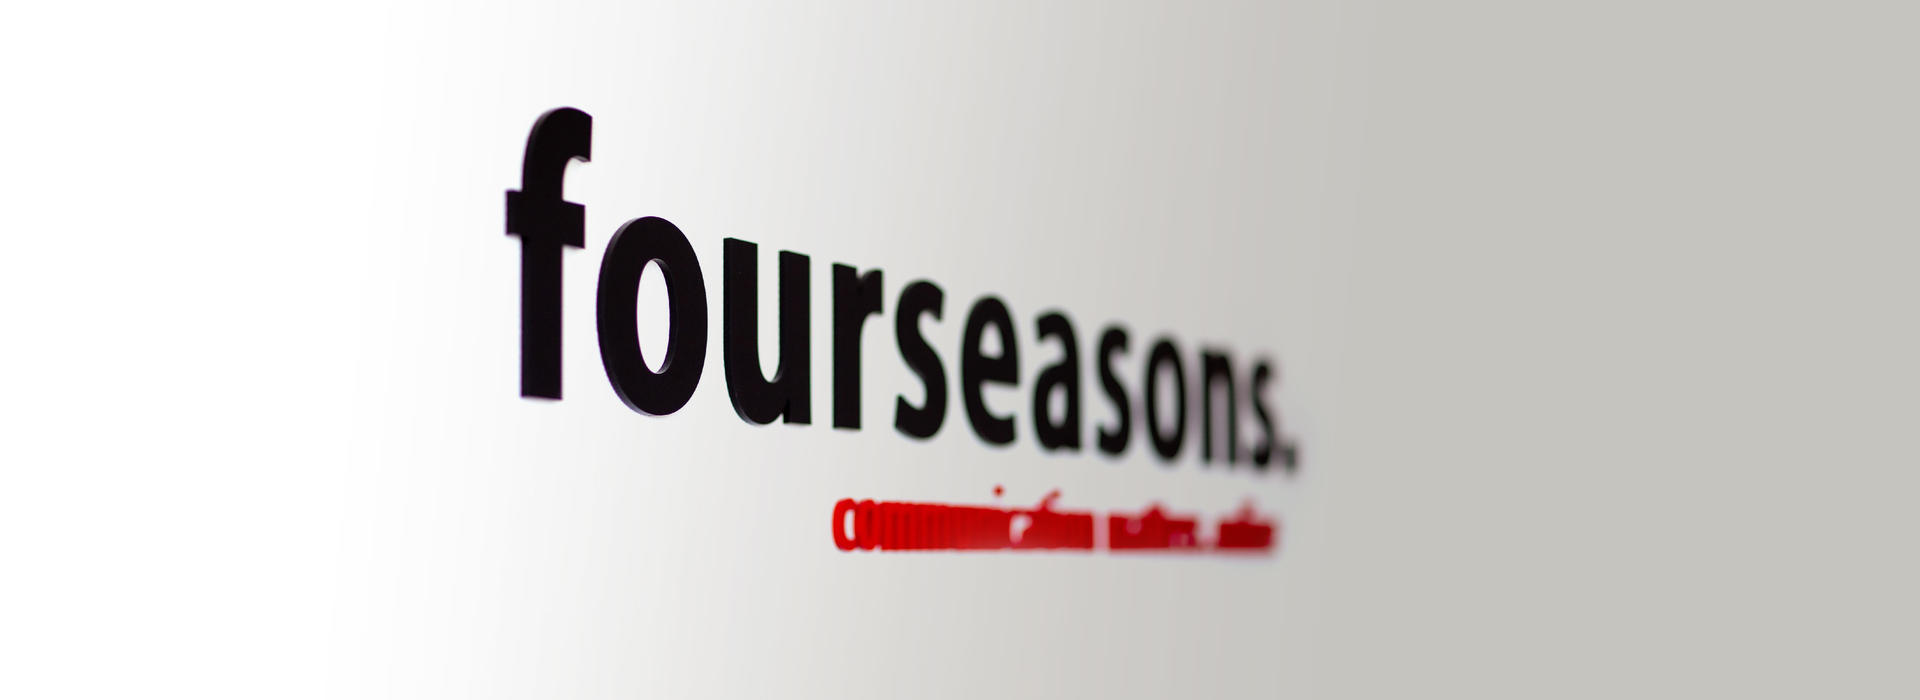 Das Logo von fourseasons an der Wand.